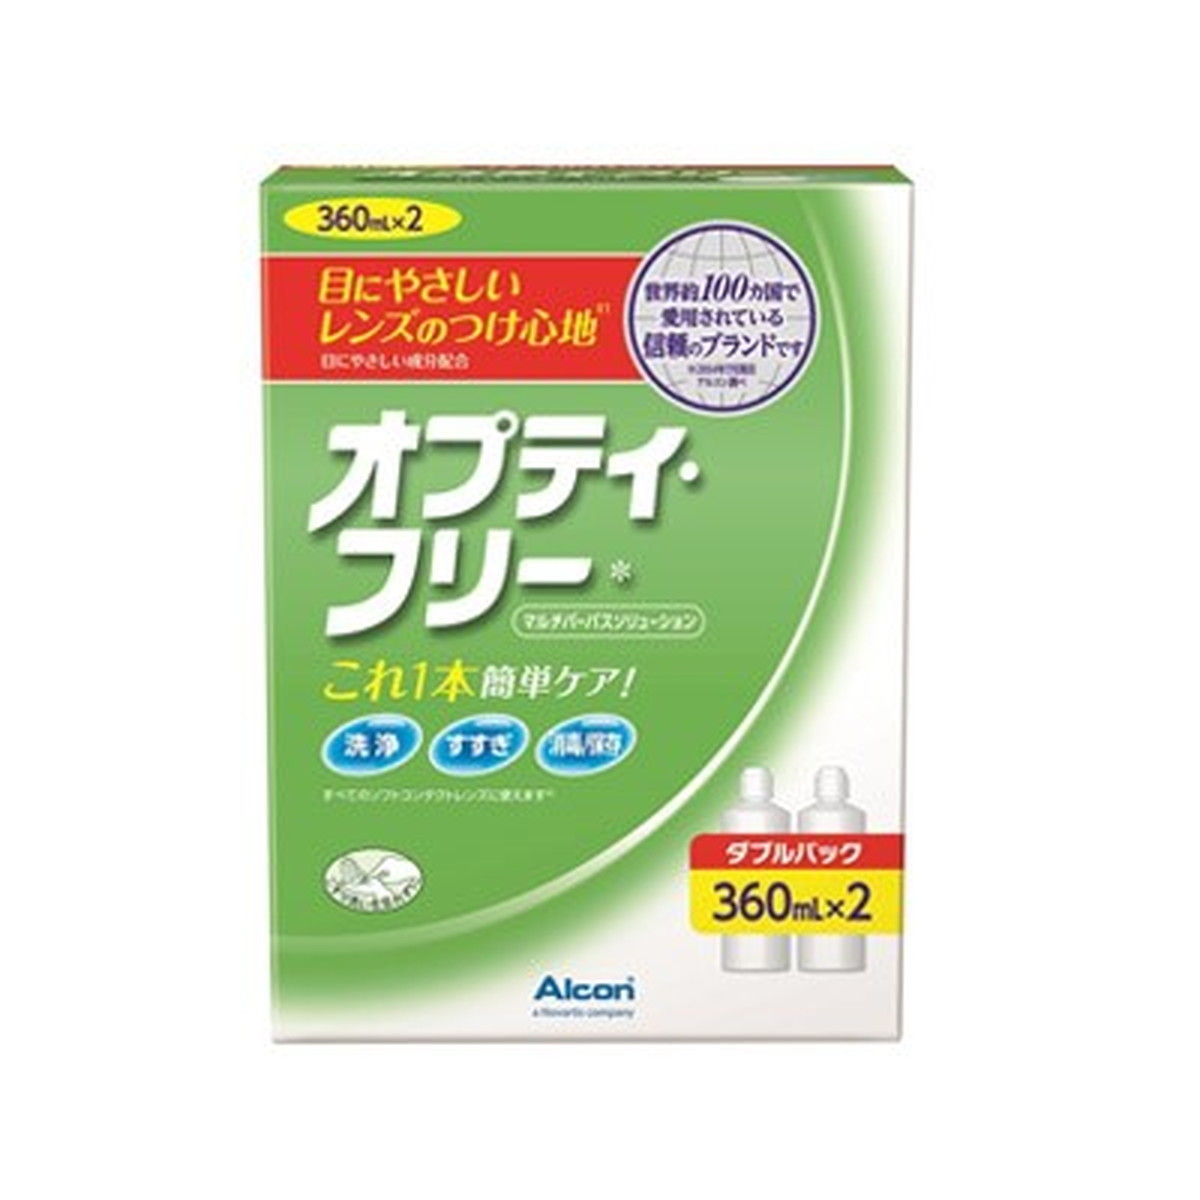 Alcon 日本アルコン オプティ・フリー ダブルパック （360ml×2本）×1箱 オプティ・フリー ソフトコンタクト洗浄保存液類の商品画像